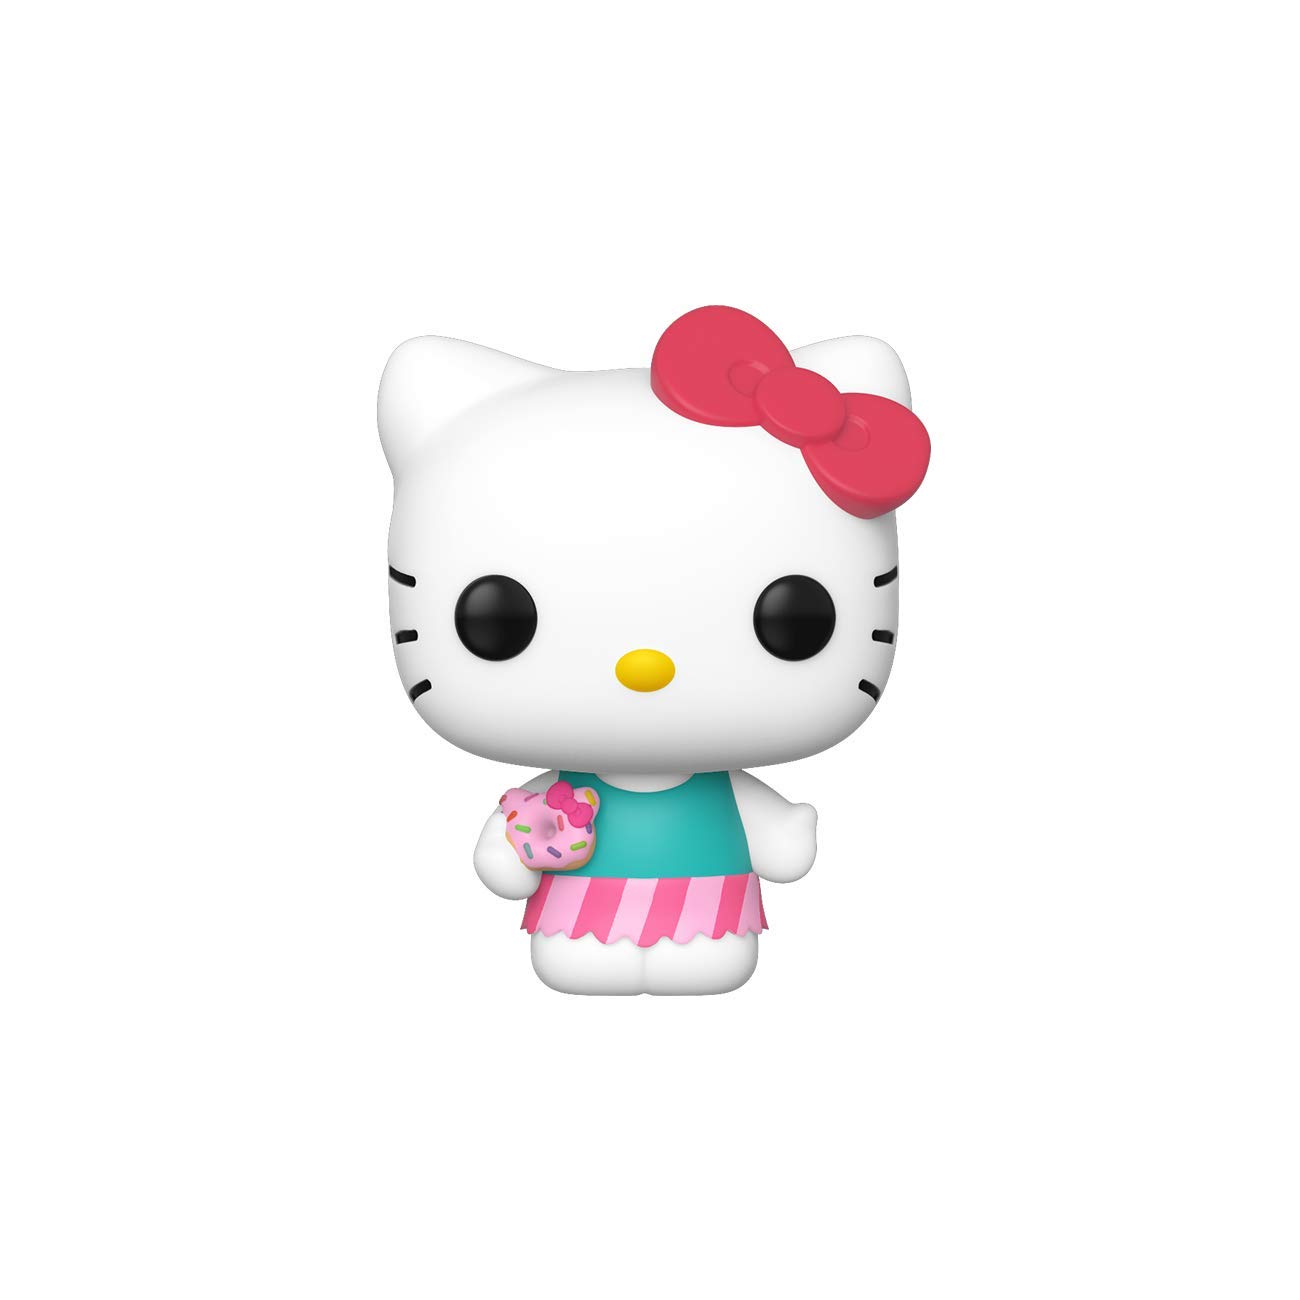 Funko Pop Hello Kitty là sản phẩm sưu tầm đắt giá cho các fan của chú mèo đáng yêu. Bộ sưu tập của bạn sẽ hoàn chỉnh hơn với những phiên bản độc đáo và đẹp mắt của Funko Pop Hello Kitty.